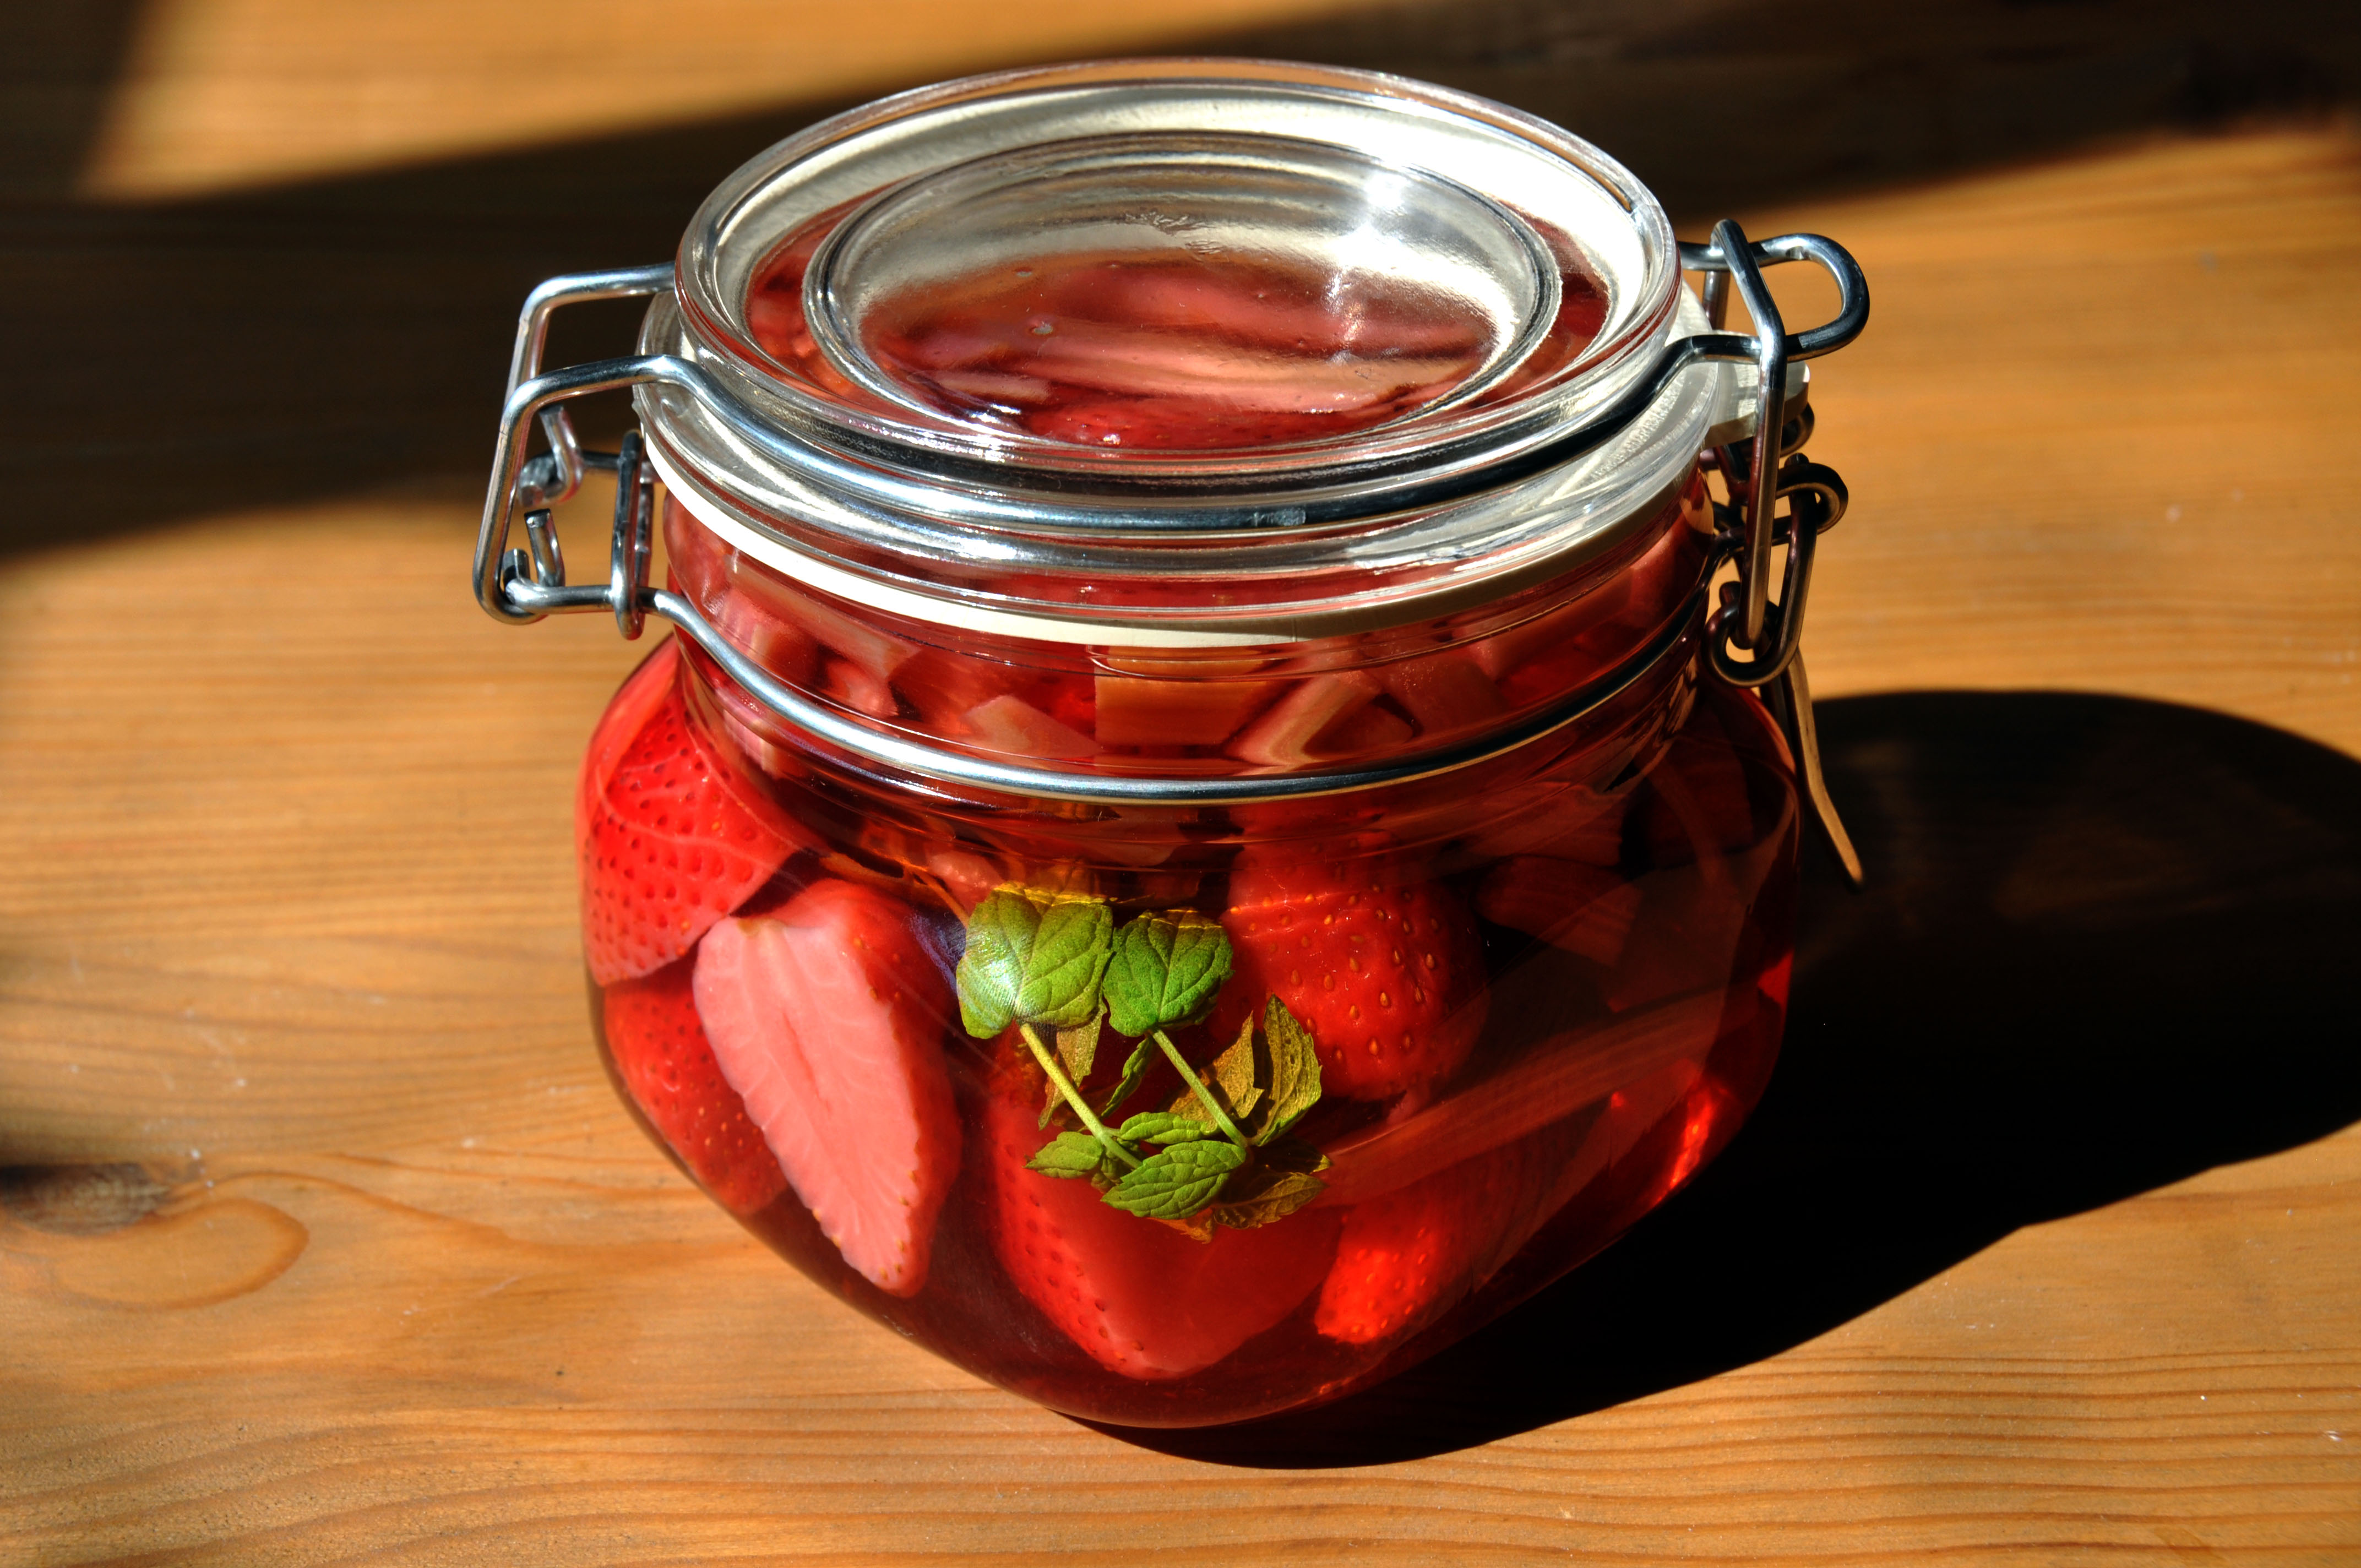 Flickr - cyclonebill - Snaps med jordbær og rabarber